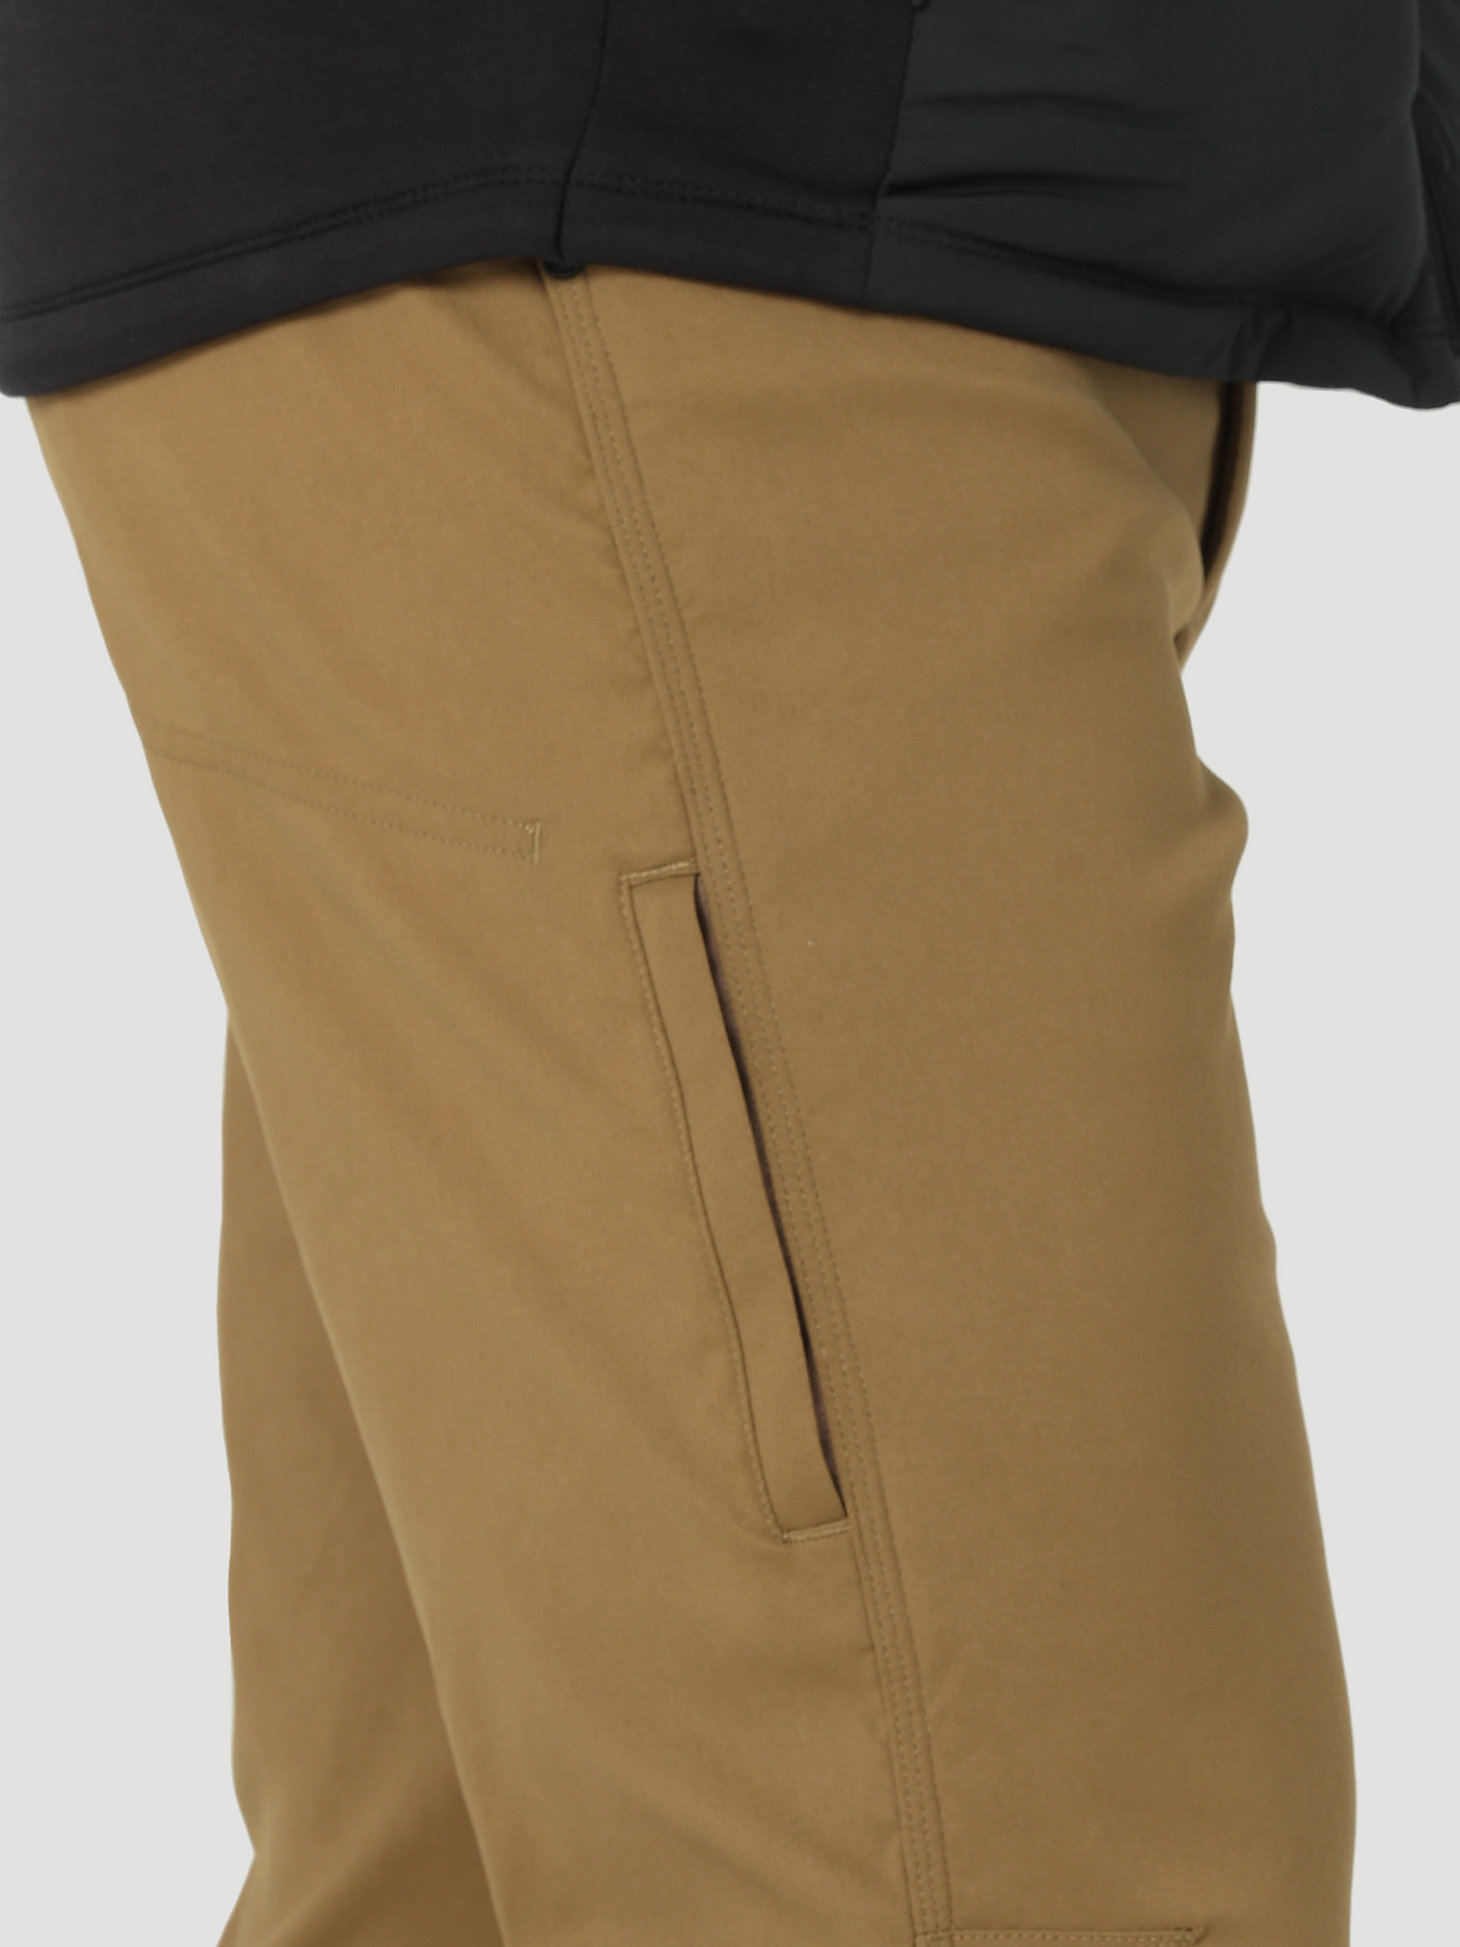 ATG by Wrangler™ Men's Fleece Lined Pant in Kangaroo alternative view 7